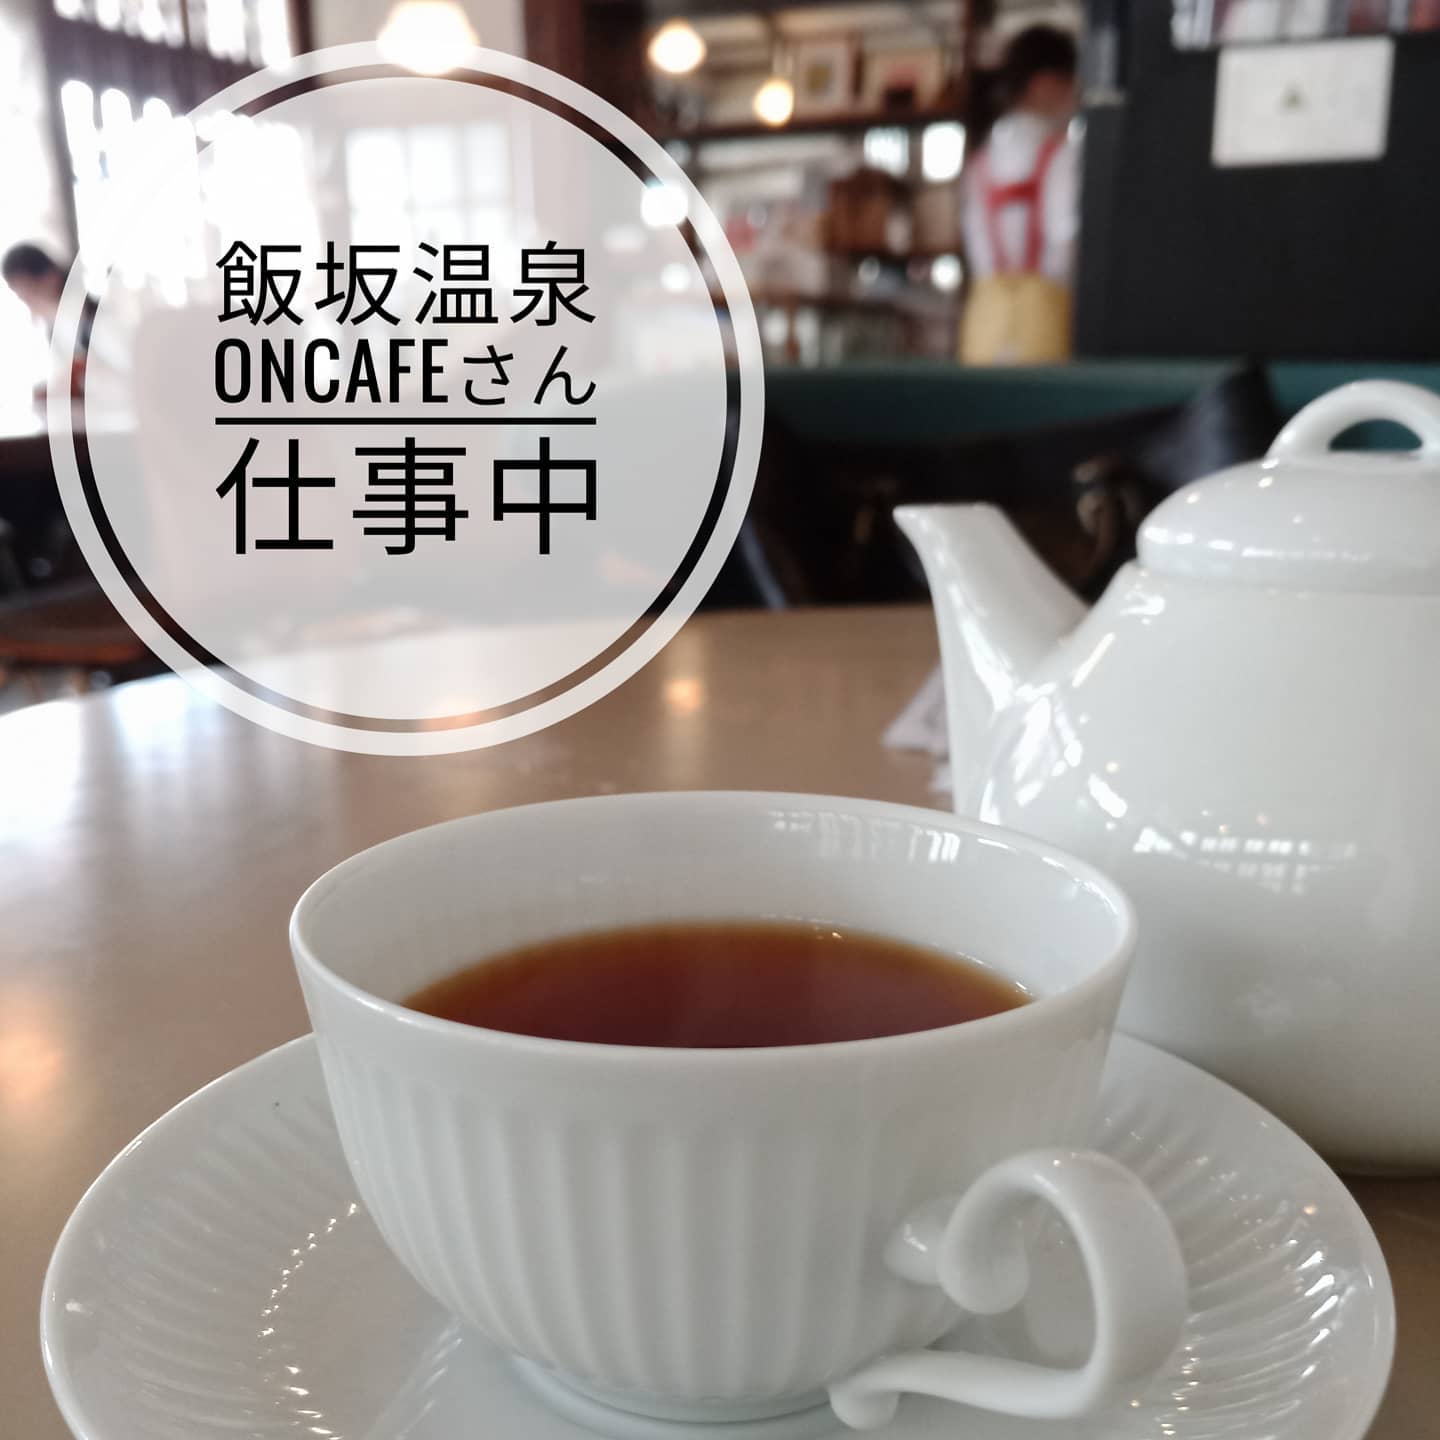 【Cafeでお仕事】桑折町の近隣には、オシャレなCafeがたくさんあります。古民家の雰囲気が集中力を高めてくれますね。